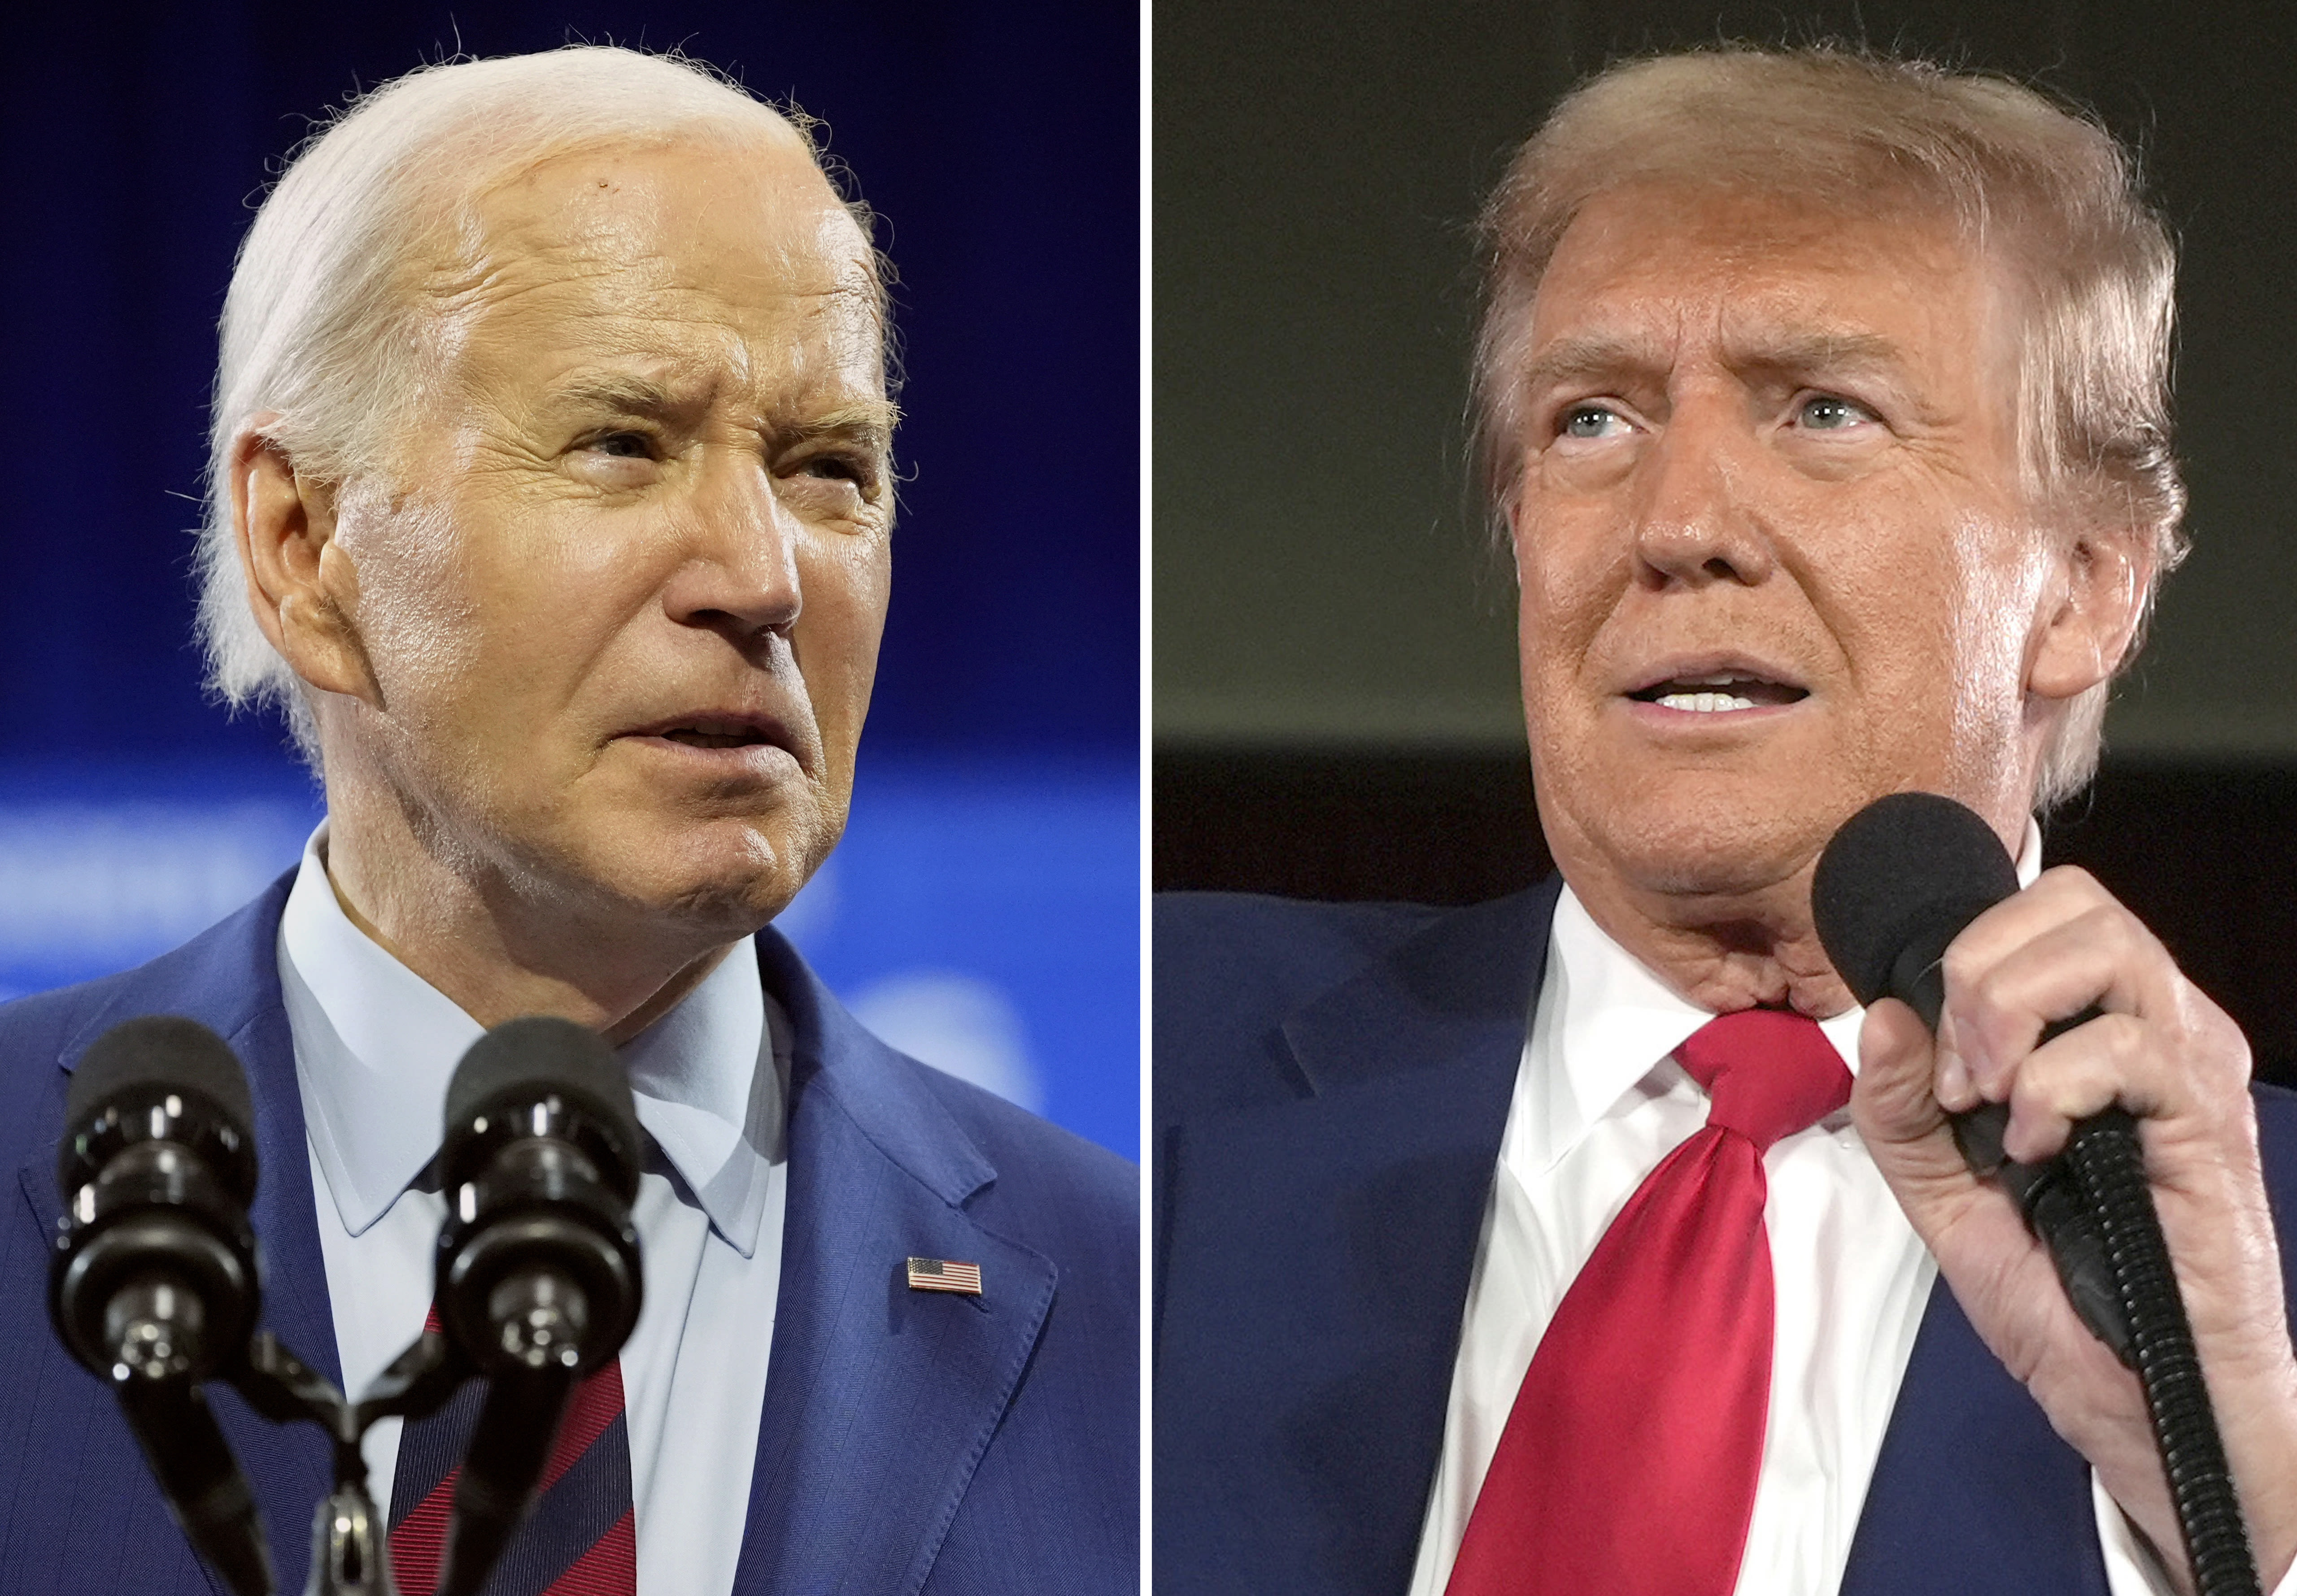 Trump and Biden’s dueling debate prep strategies